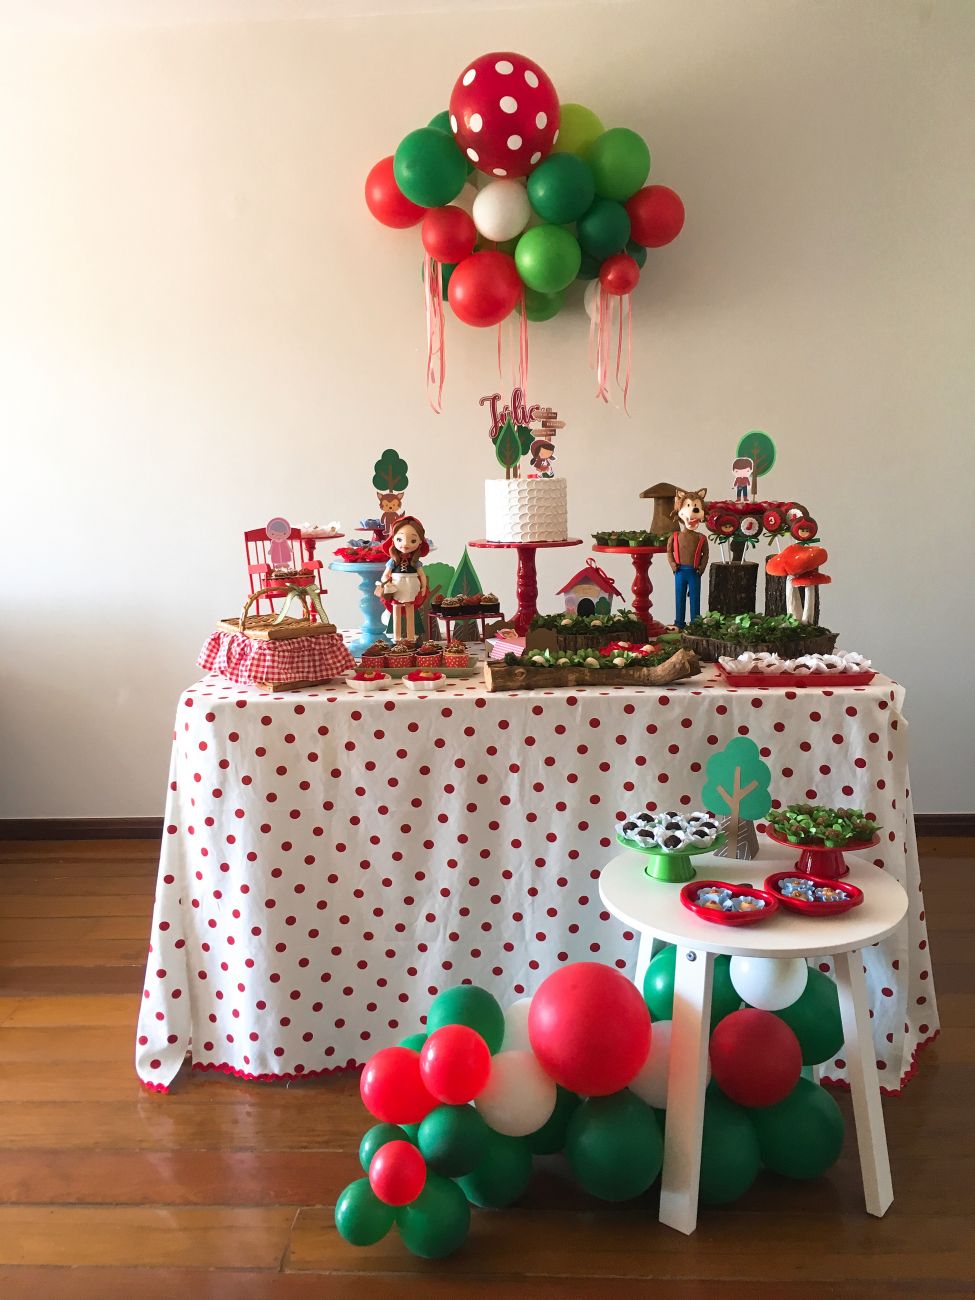 Idéias lindas para decoração de festa Chapeuzinho vermelho (Bolos